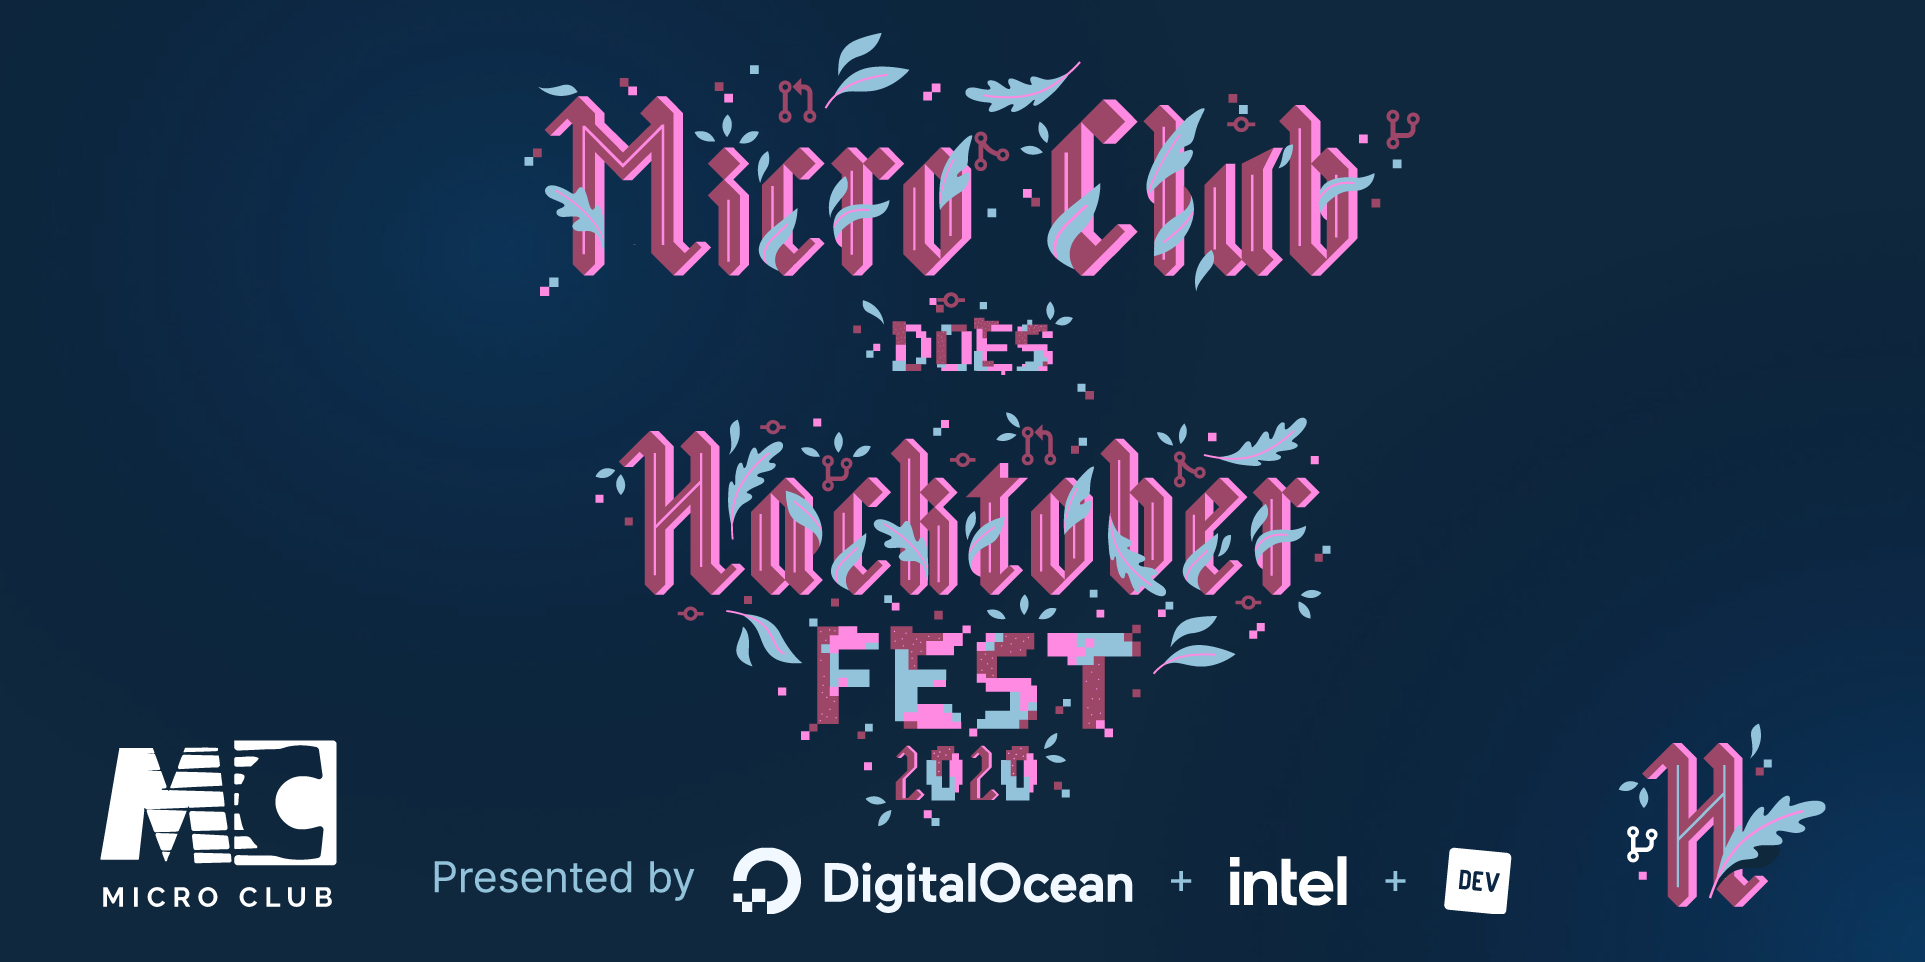 Micro Club does Hacktoberfest